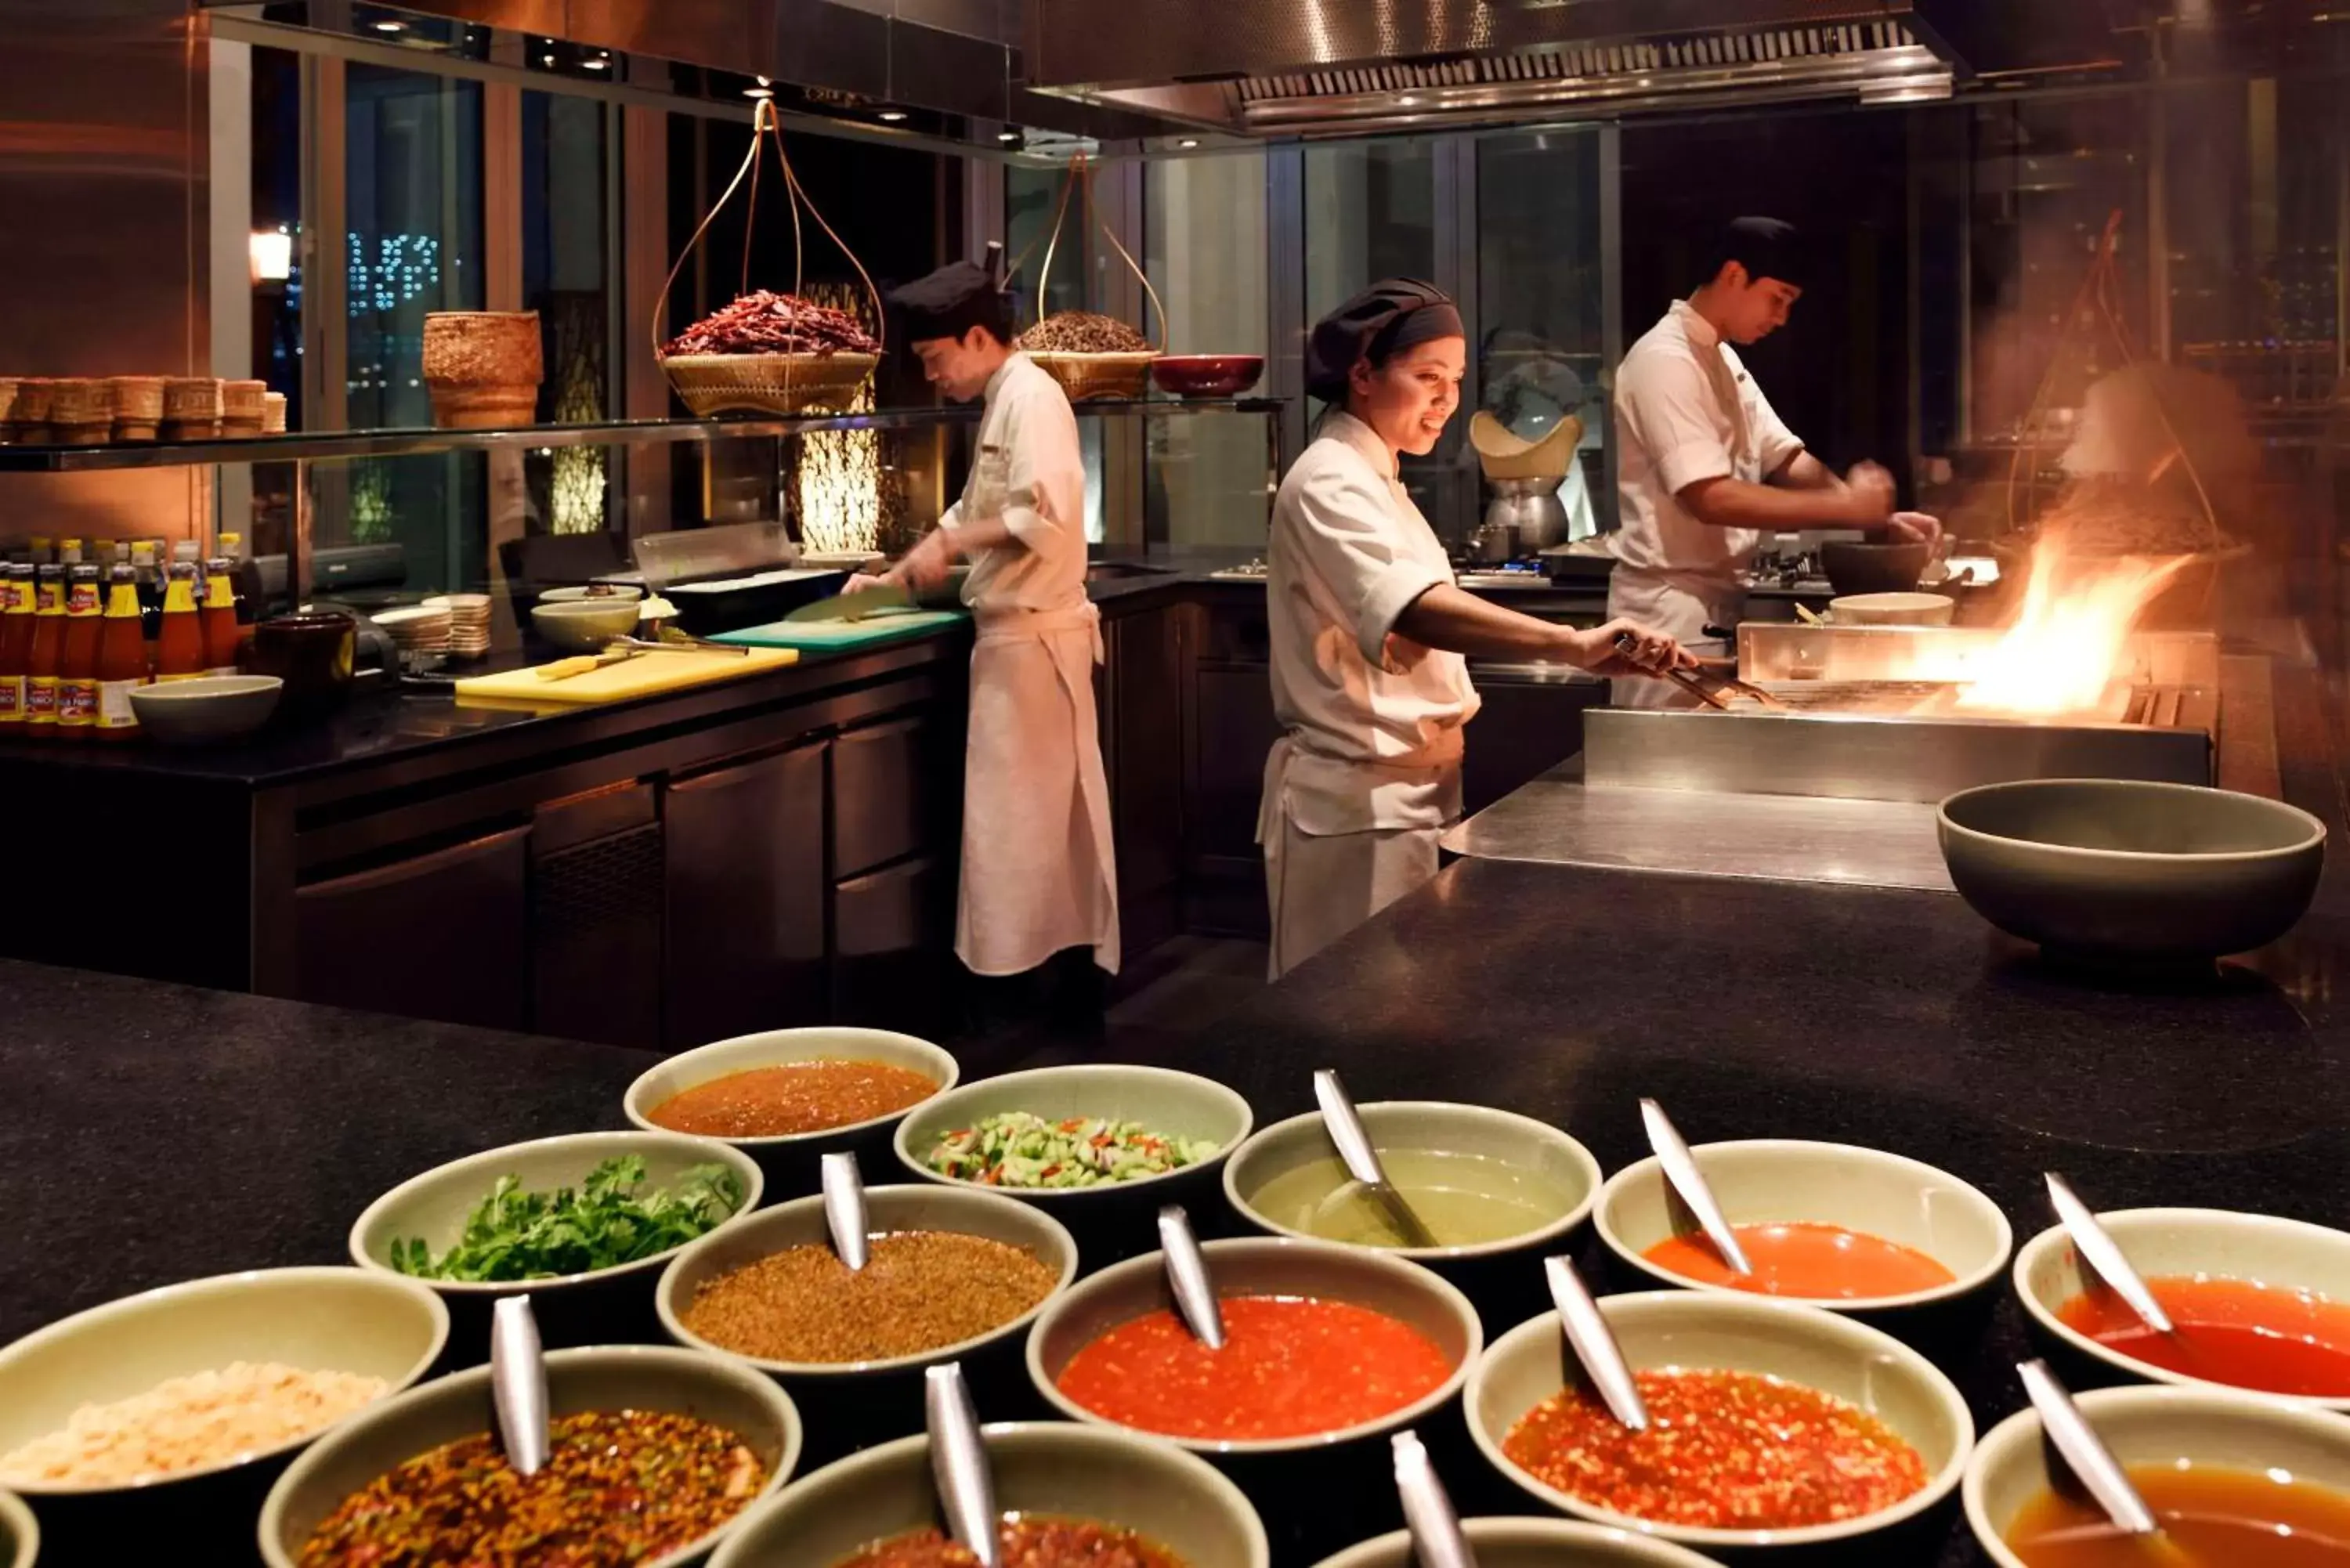 Restaurant/places to eat in Park Hyatt Dubai